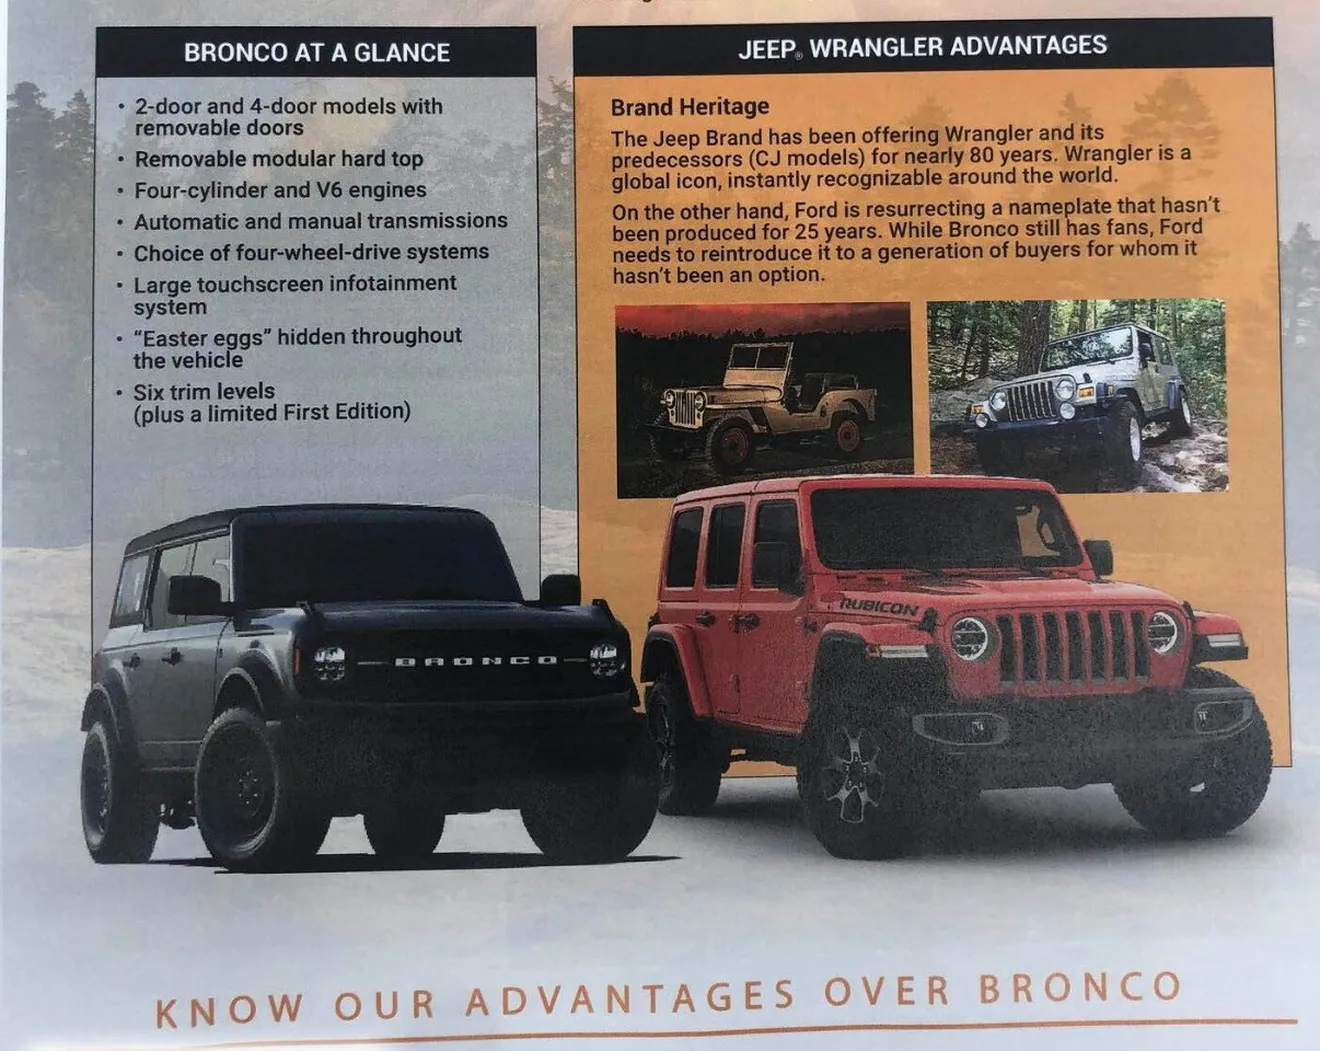 Jeep crea un catálogo de las ventajas del Wrangler sobre “su imitador”,  el nuevo Bronco